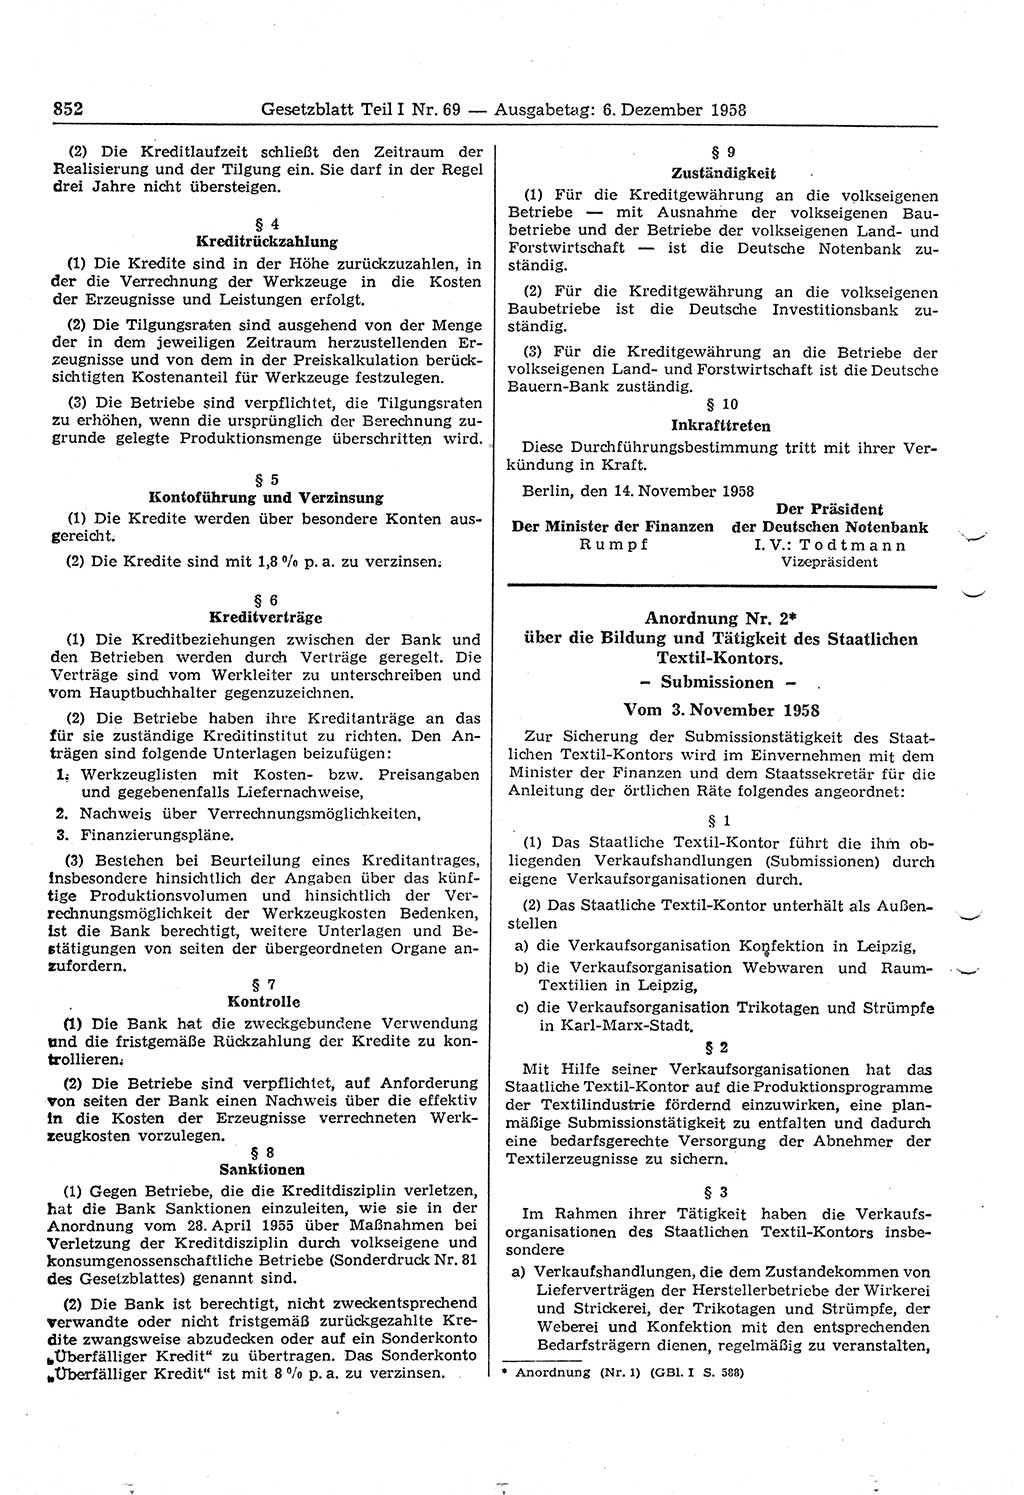 Gesetzblatt (GBl.) der Deutschen Demokratischen Republik (DDR) Teil Ⅰ 1958, Seite 852 (GBl. DDR Ⅰ 1958, S. 852)